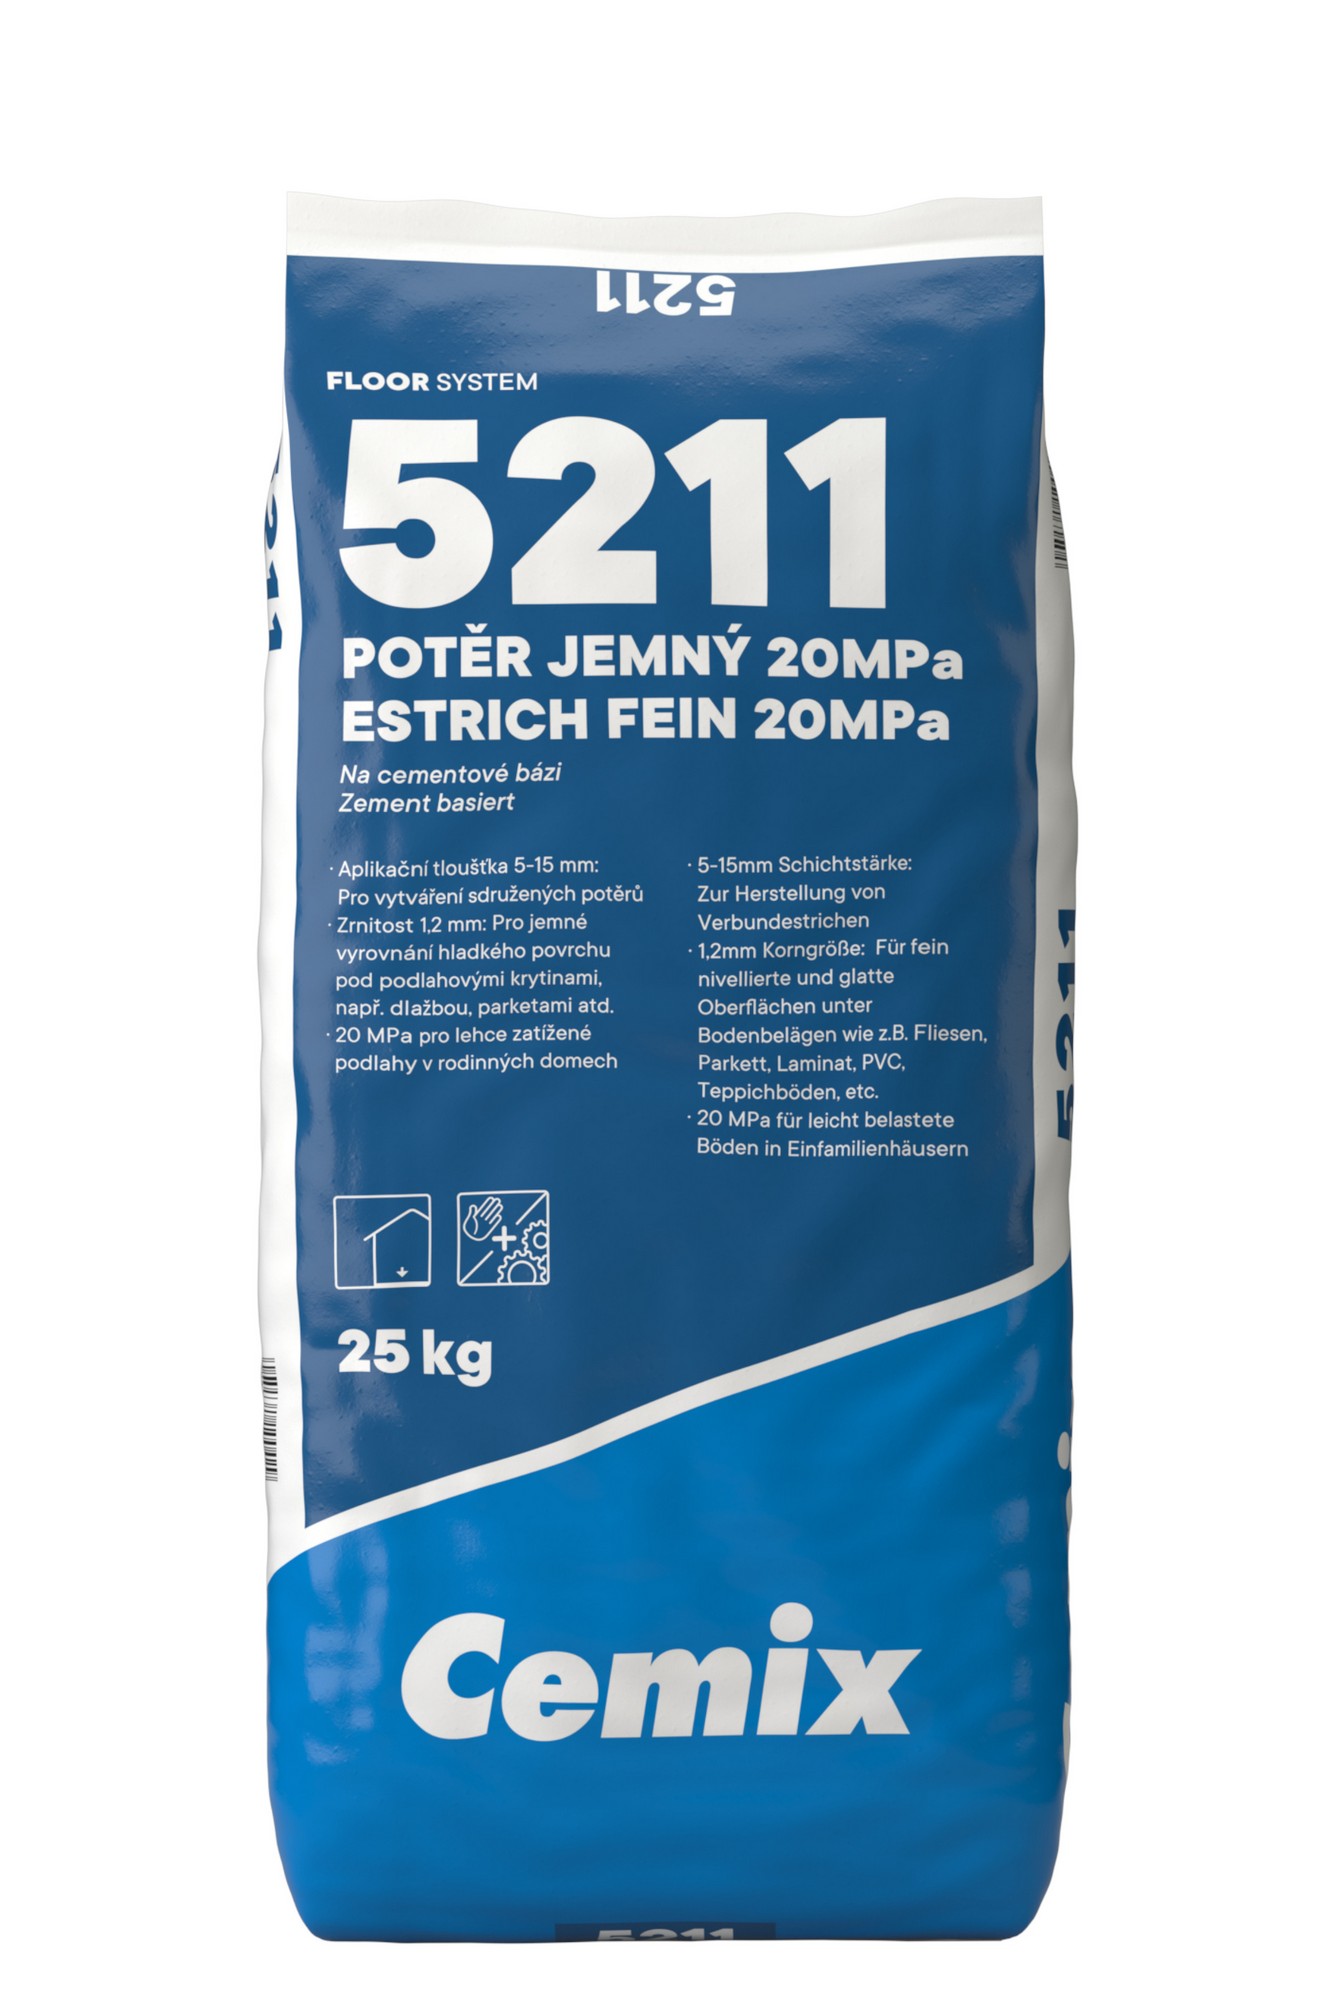 Potěr cementový 20 MPa Cemix 5211 jemný 25 kg